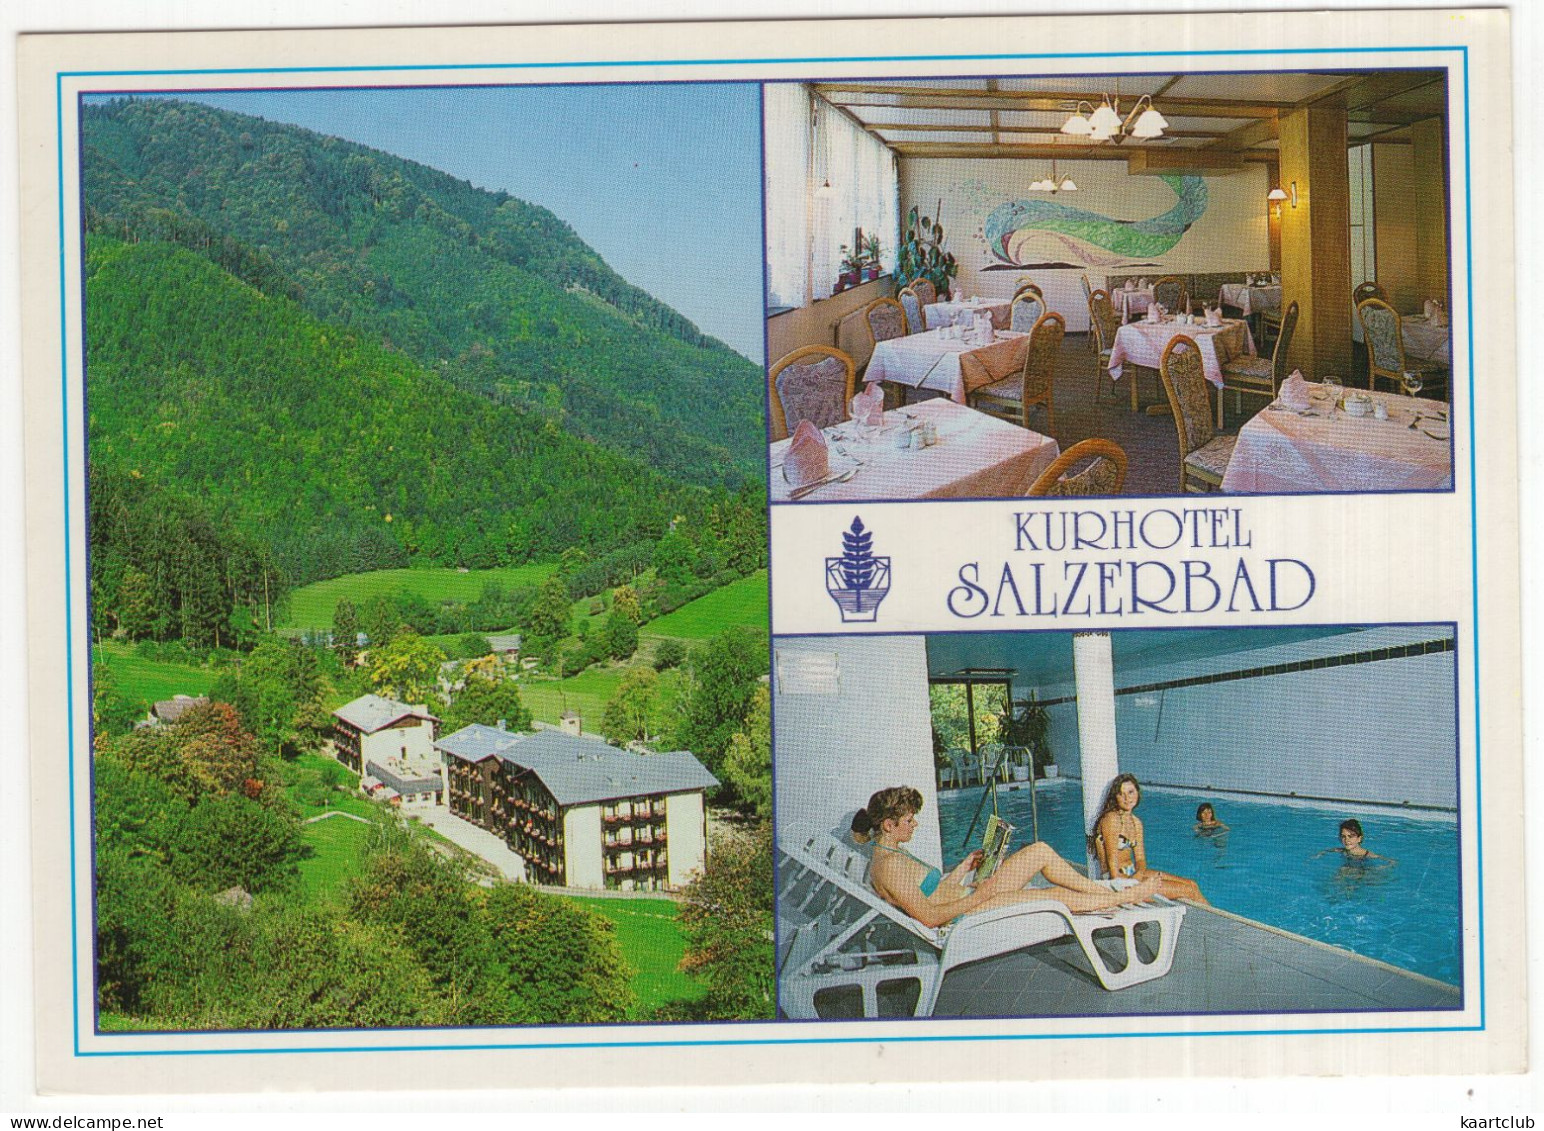 Kleinzell Bei Hainfeld, NÖ. - Kurhotel****  'Salzerbad' -  (Österreich/Austria) - Piscine / Swimmingpool / Hallenbad - Lilienfeld